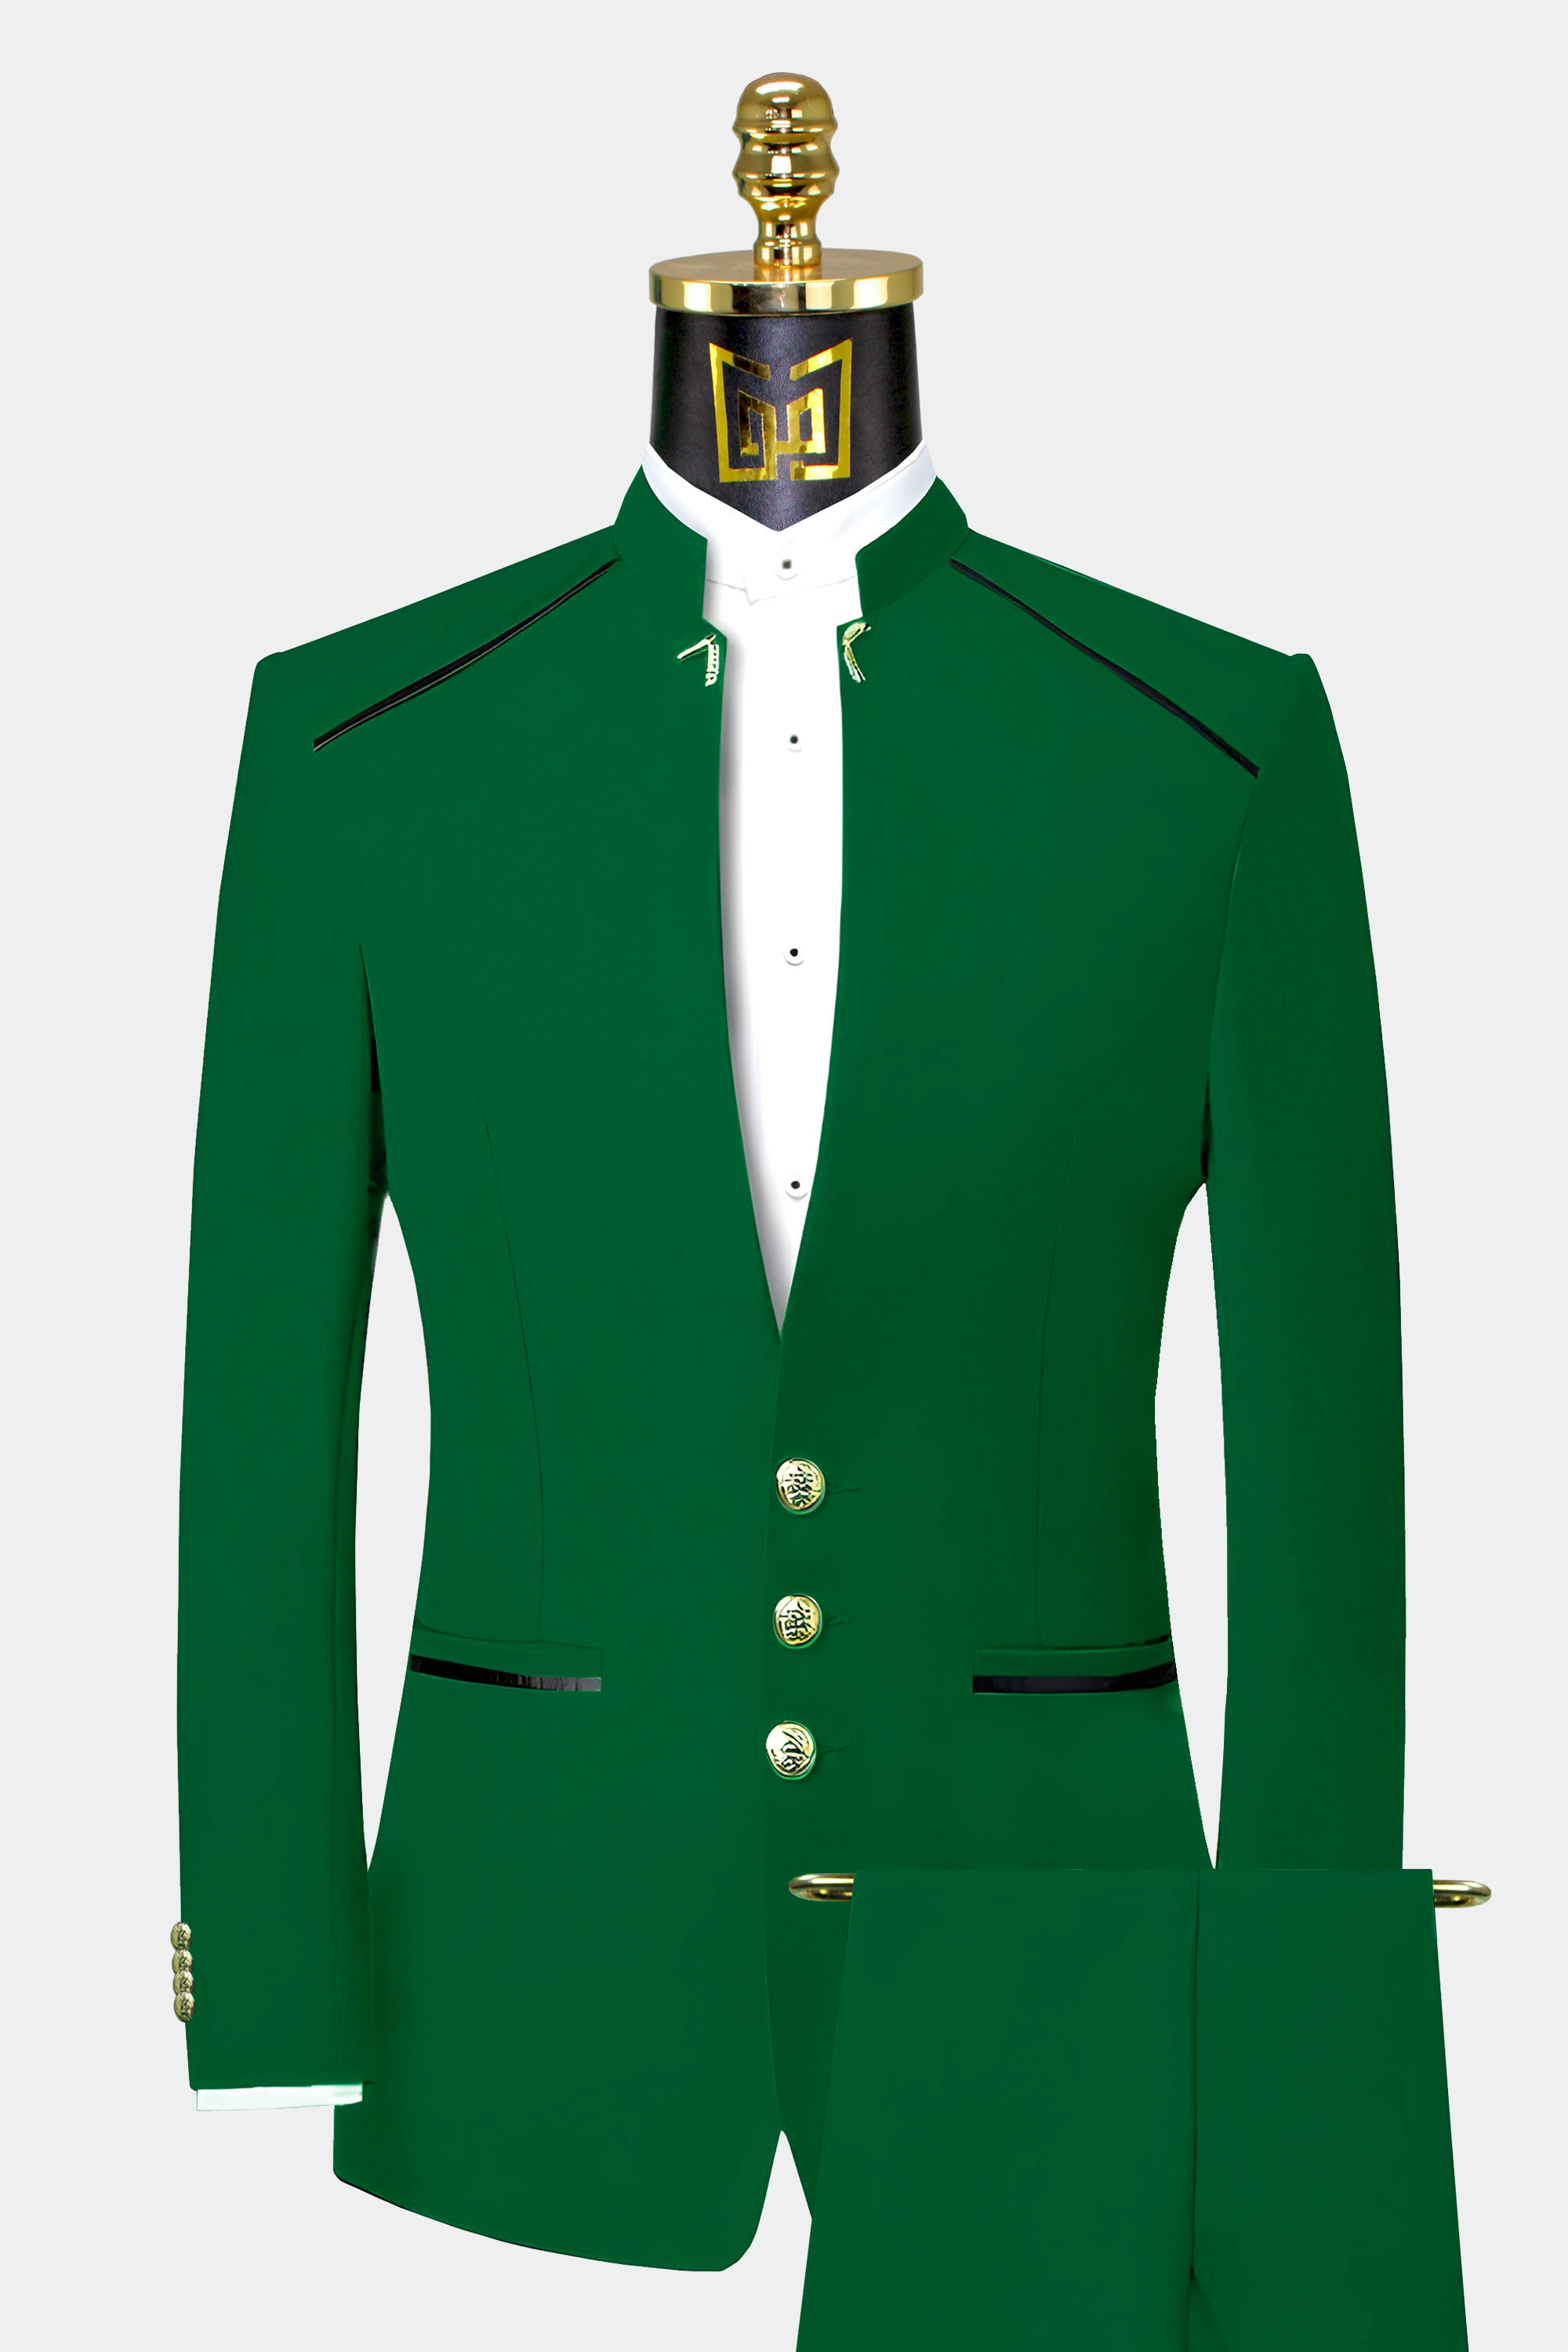 Green-Mandarin-Collar-Suit-Wedding-Groom-Turtle-Neck-Chinese-Collar-Mao-Prom-Suit-from-Gentlemansguru.com.com